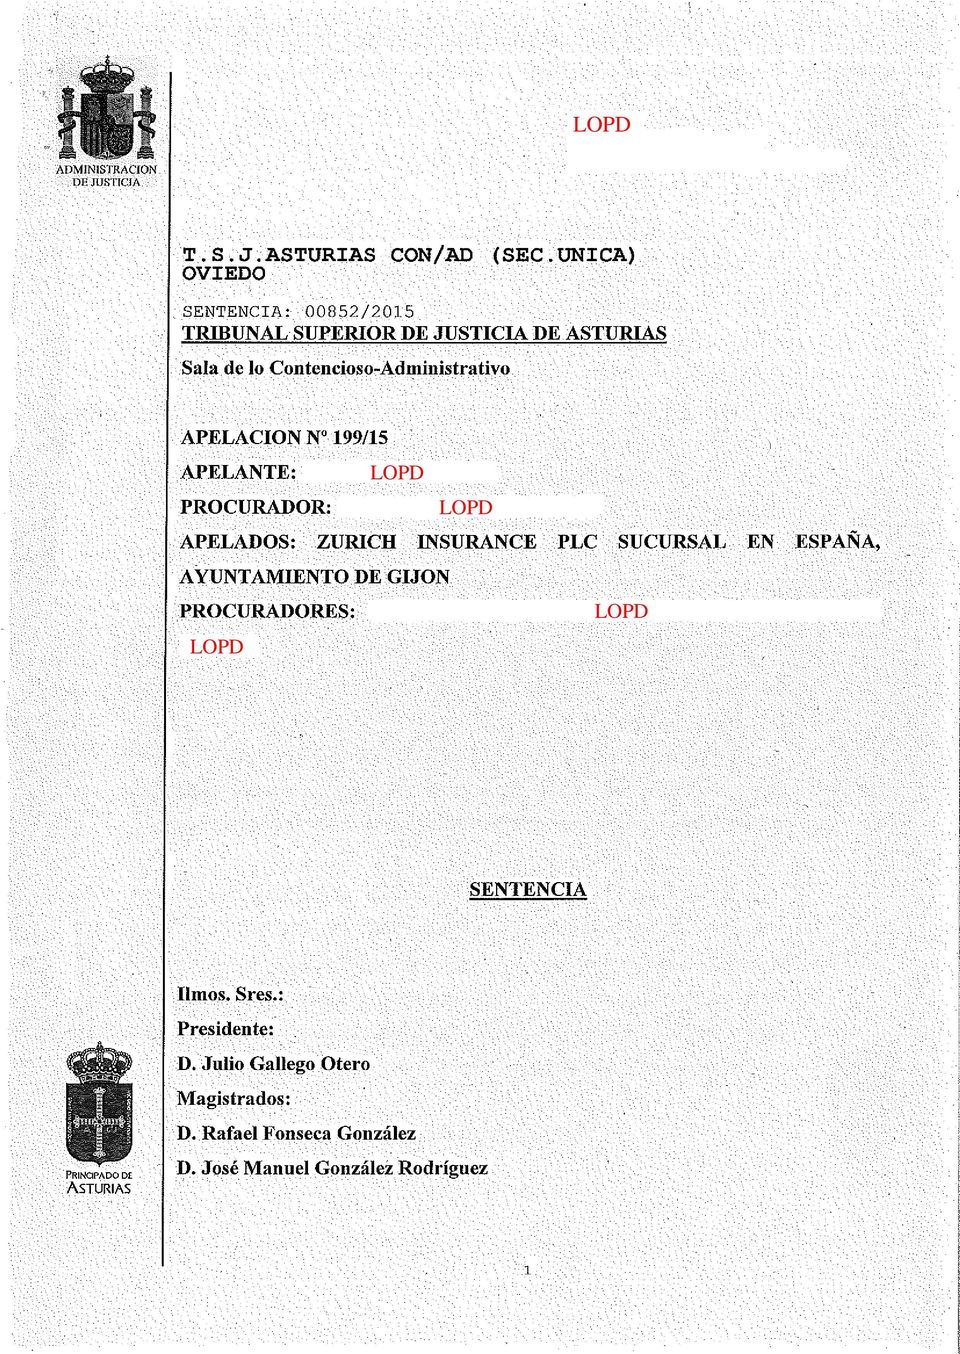 199/15 APELANTE: LOPD PROCURADOR: LOPD APELADOS: ZURICH INSURANCE PLC SUCURSAL EN ESPAÑA, AYUNTAMIENTO DE